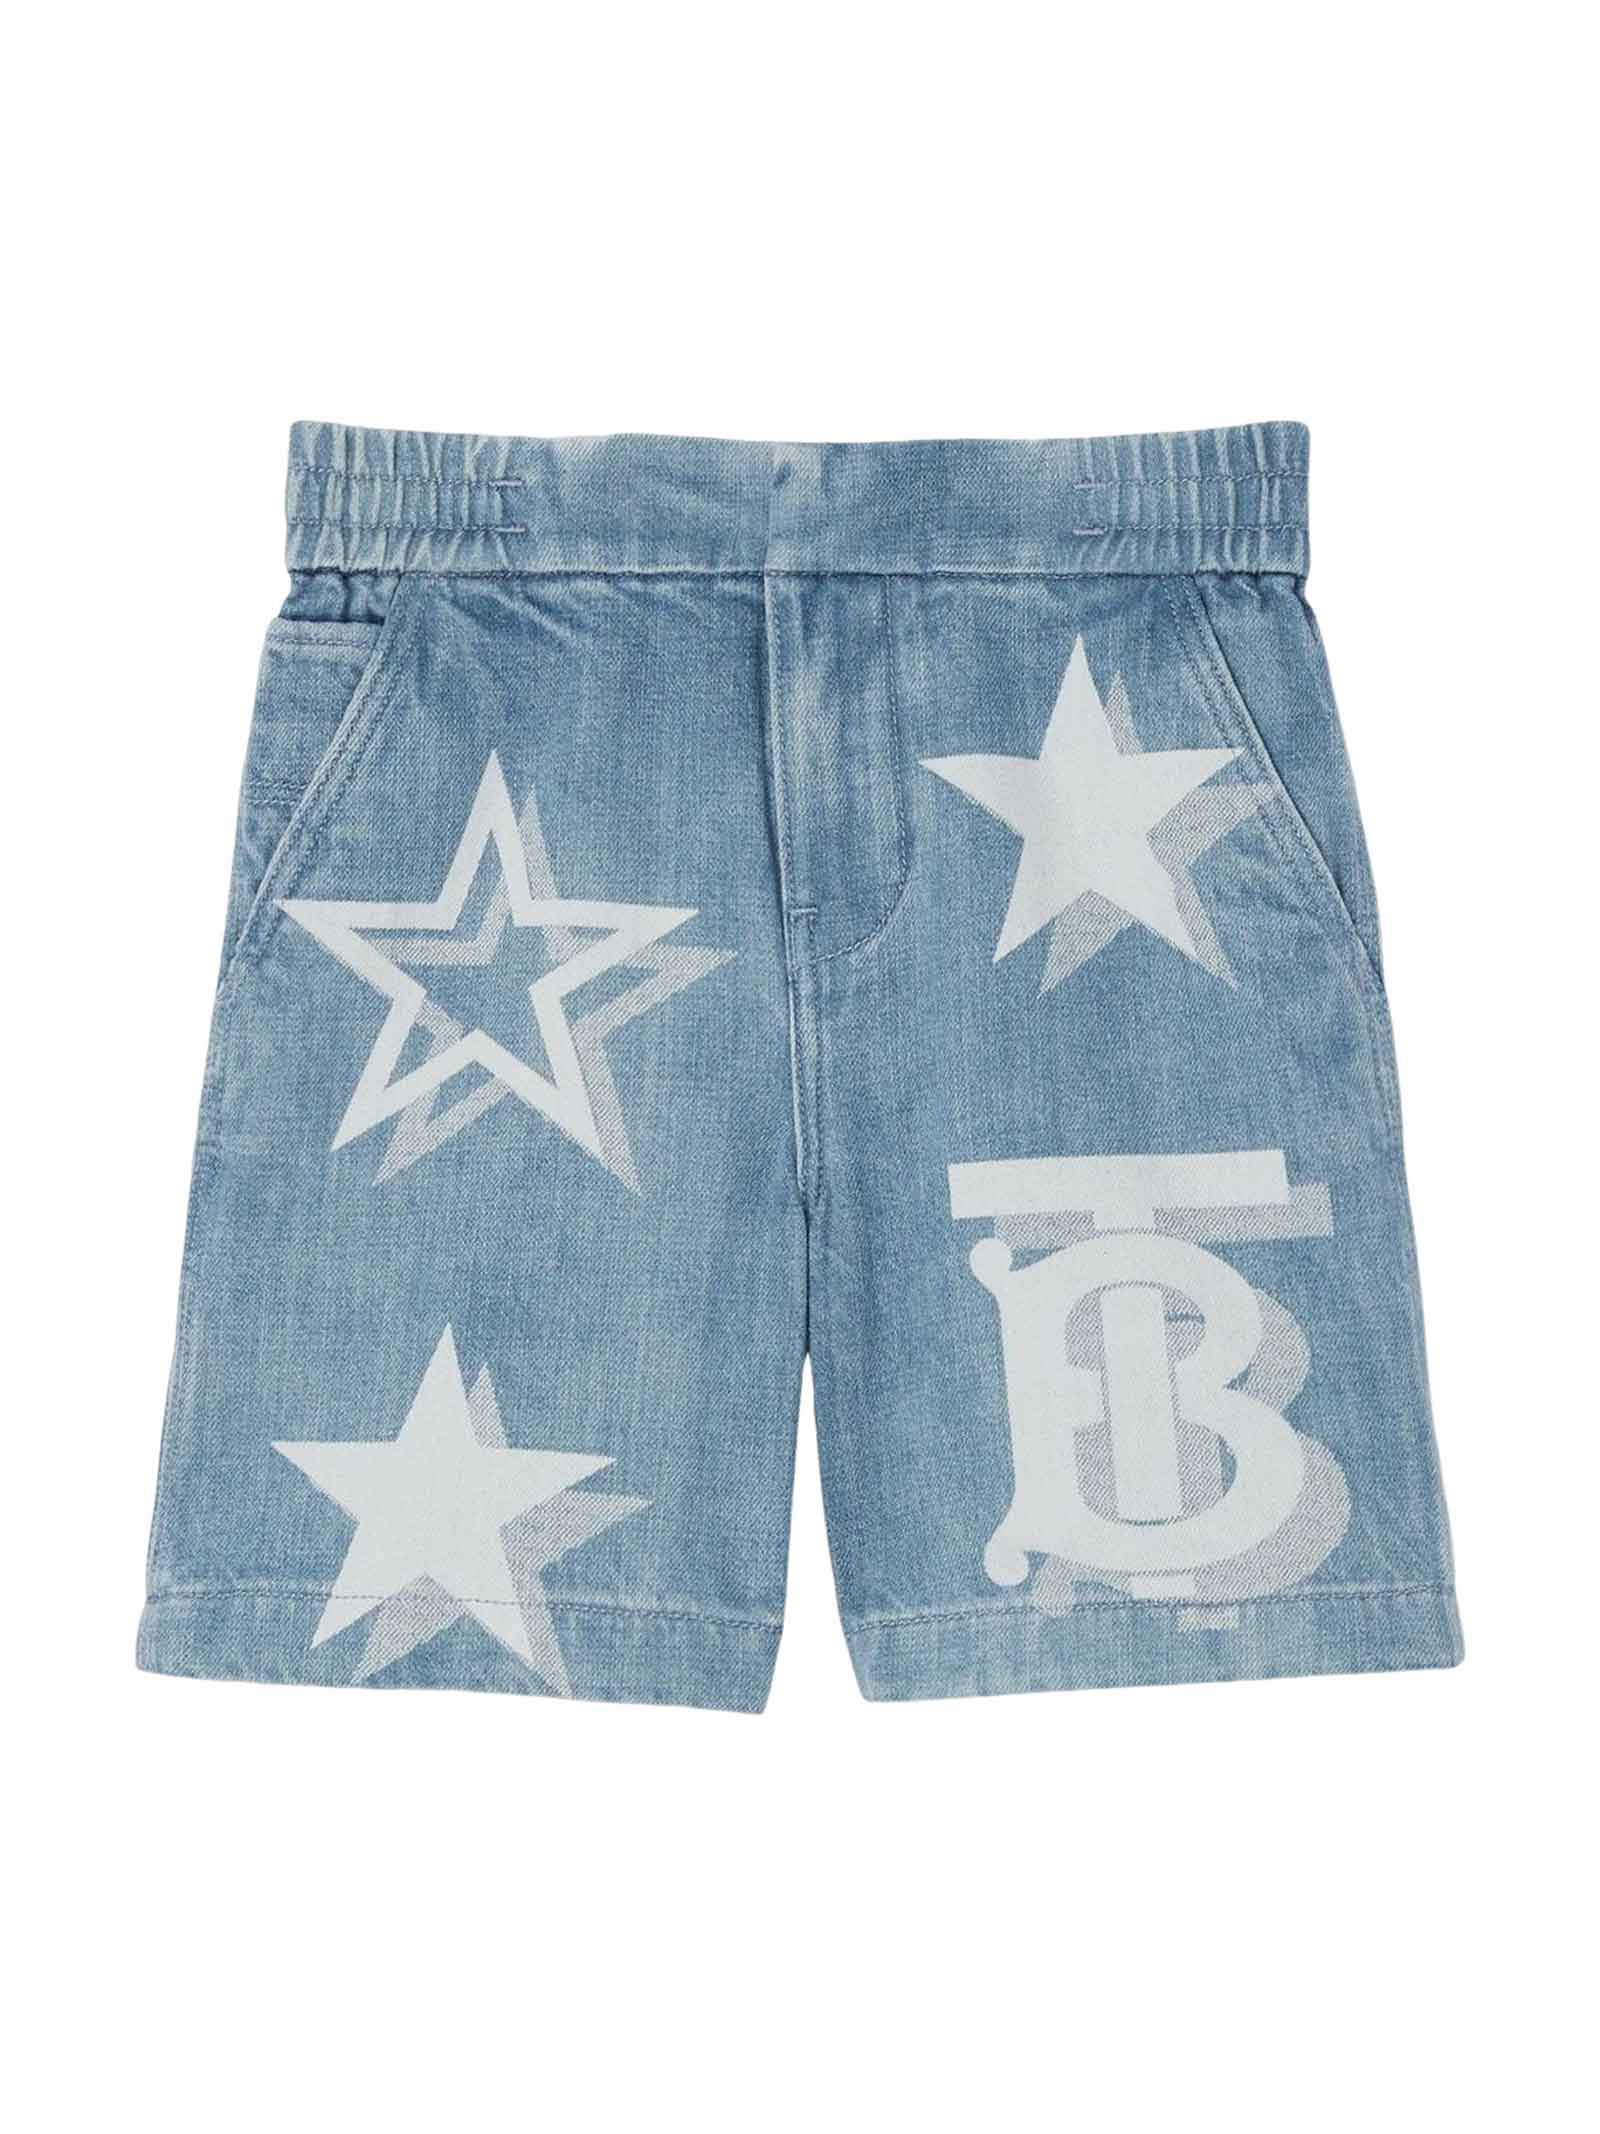 Burberry Kids' Blue Denim Bermuda Shorts Boy